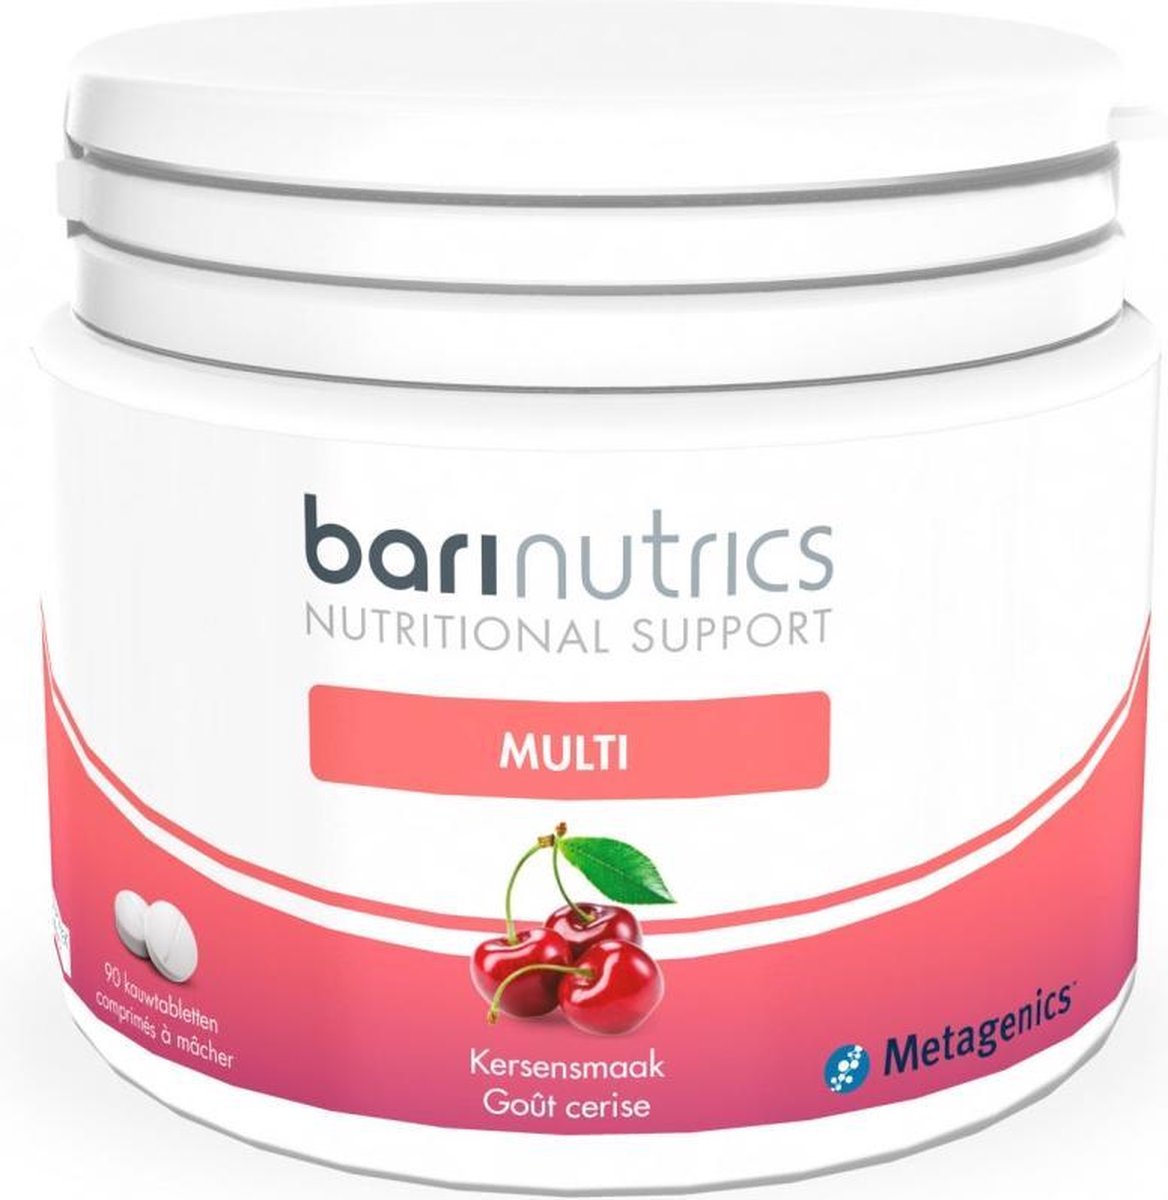 BariNutrics Multi Kers V3 NF 90 kauwtabletten - Metagenics